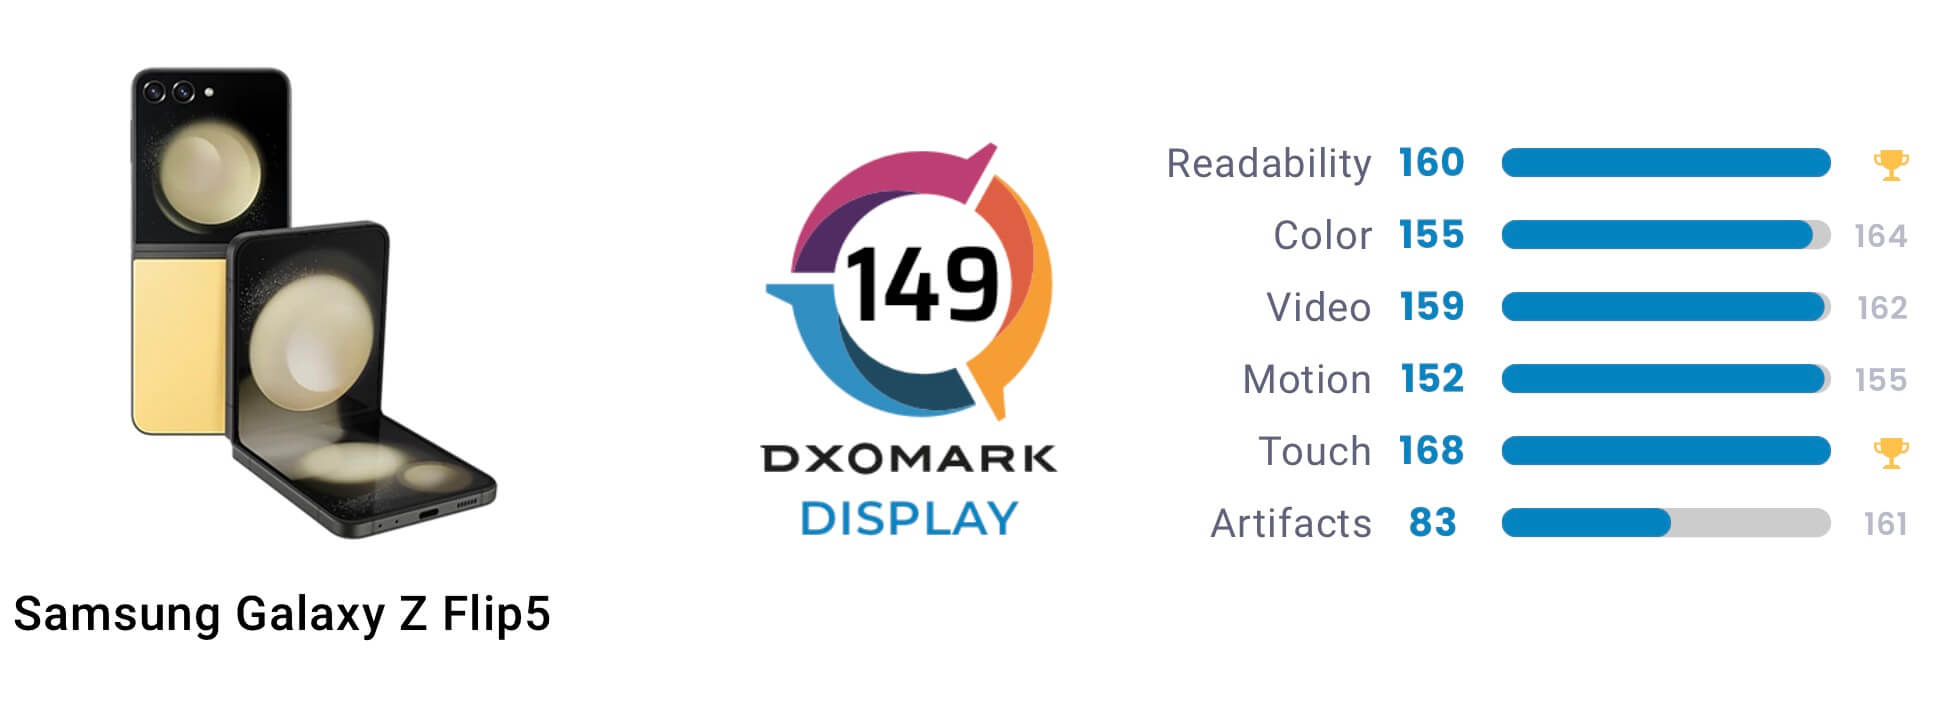 Дисплей Samsung Galaxy Z Flip 5 попал в ТОП-3 по версии DxOMark